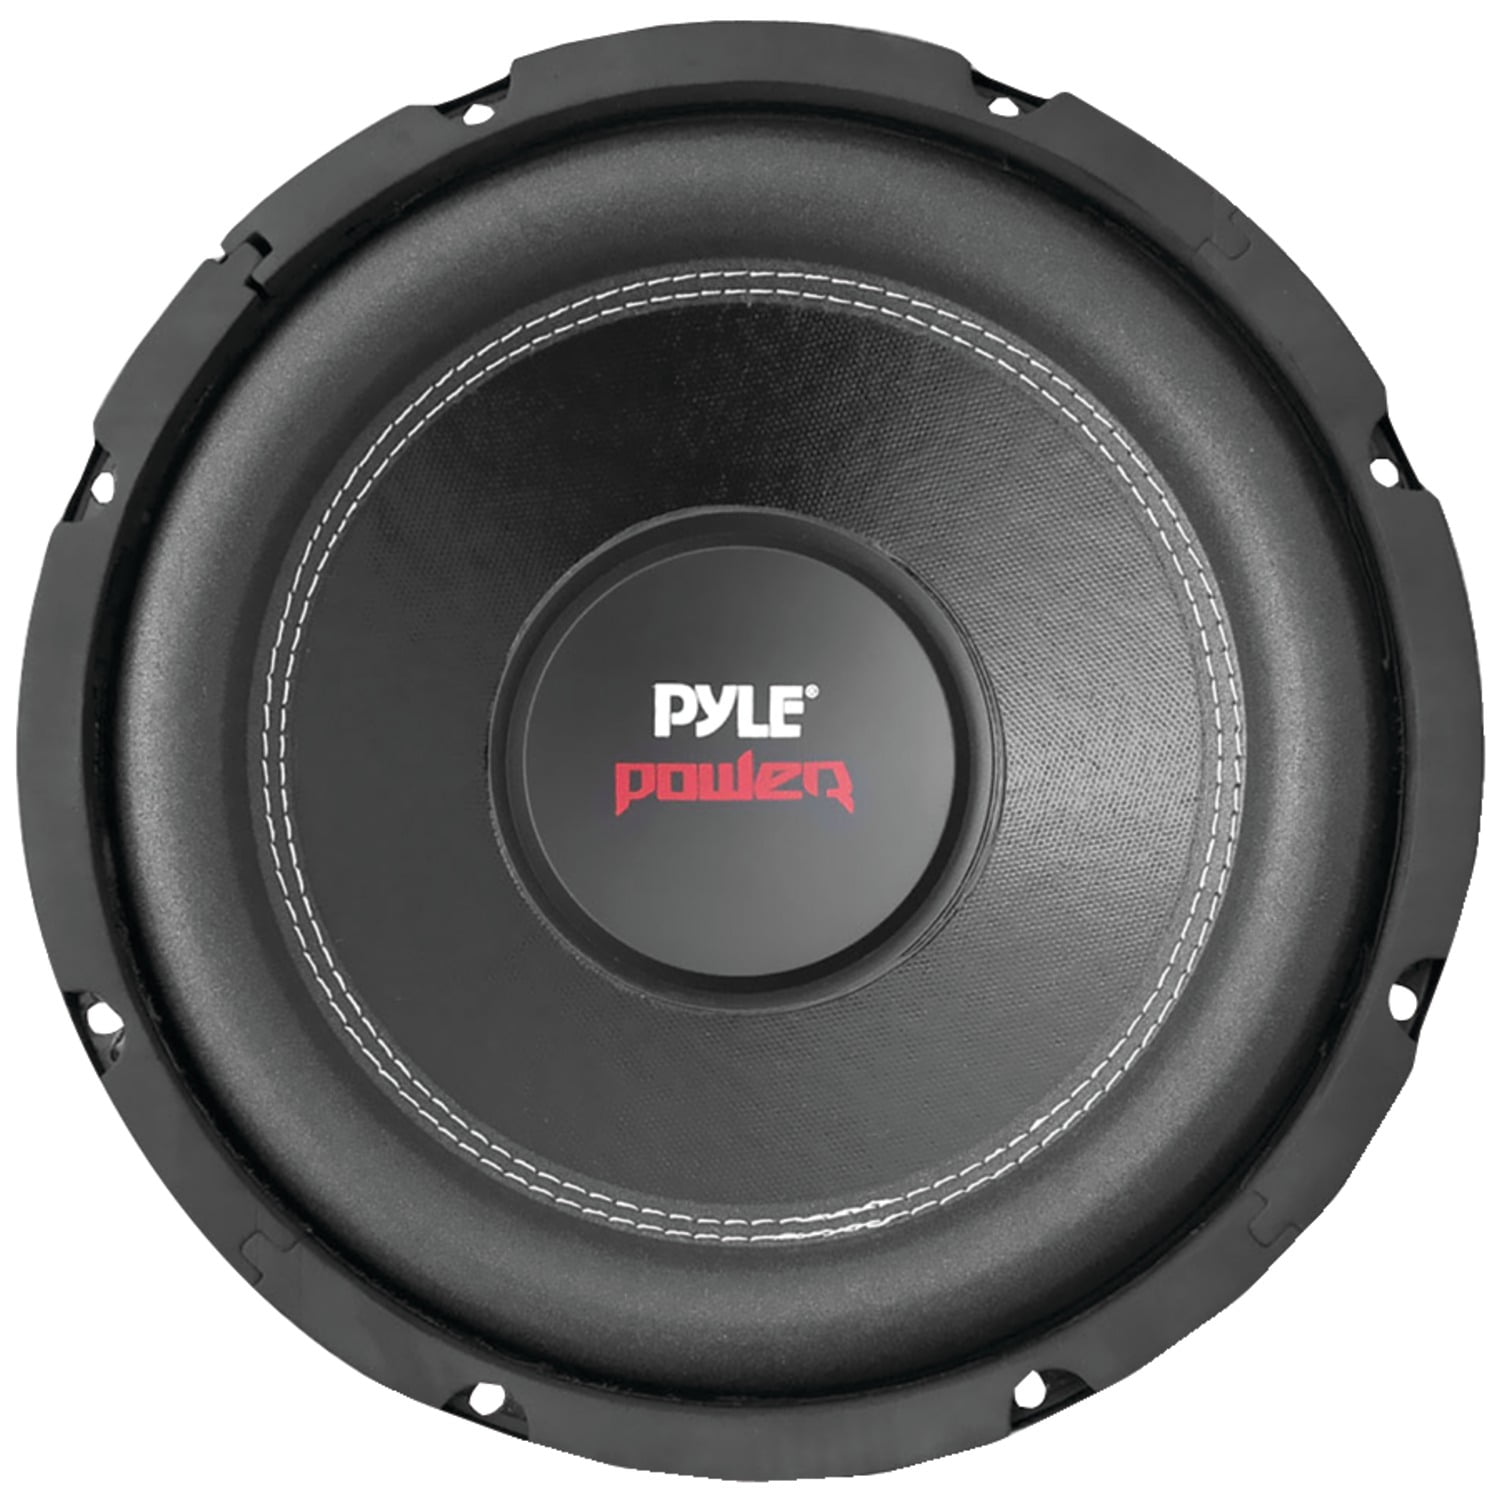 Feje Genveje Advarsel Pyle® Plpw15d Series Dual-voice-coil 4ohm Subwoofer (15", 2,000 Watts) -  Walmart.com